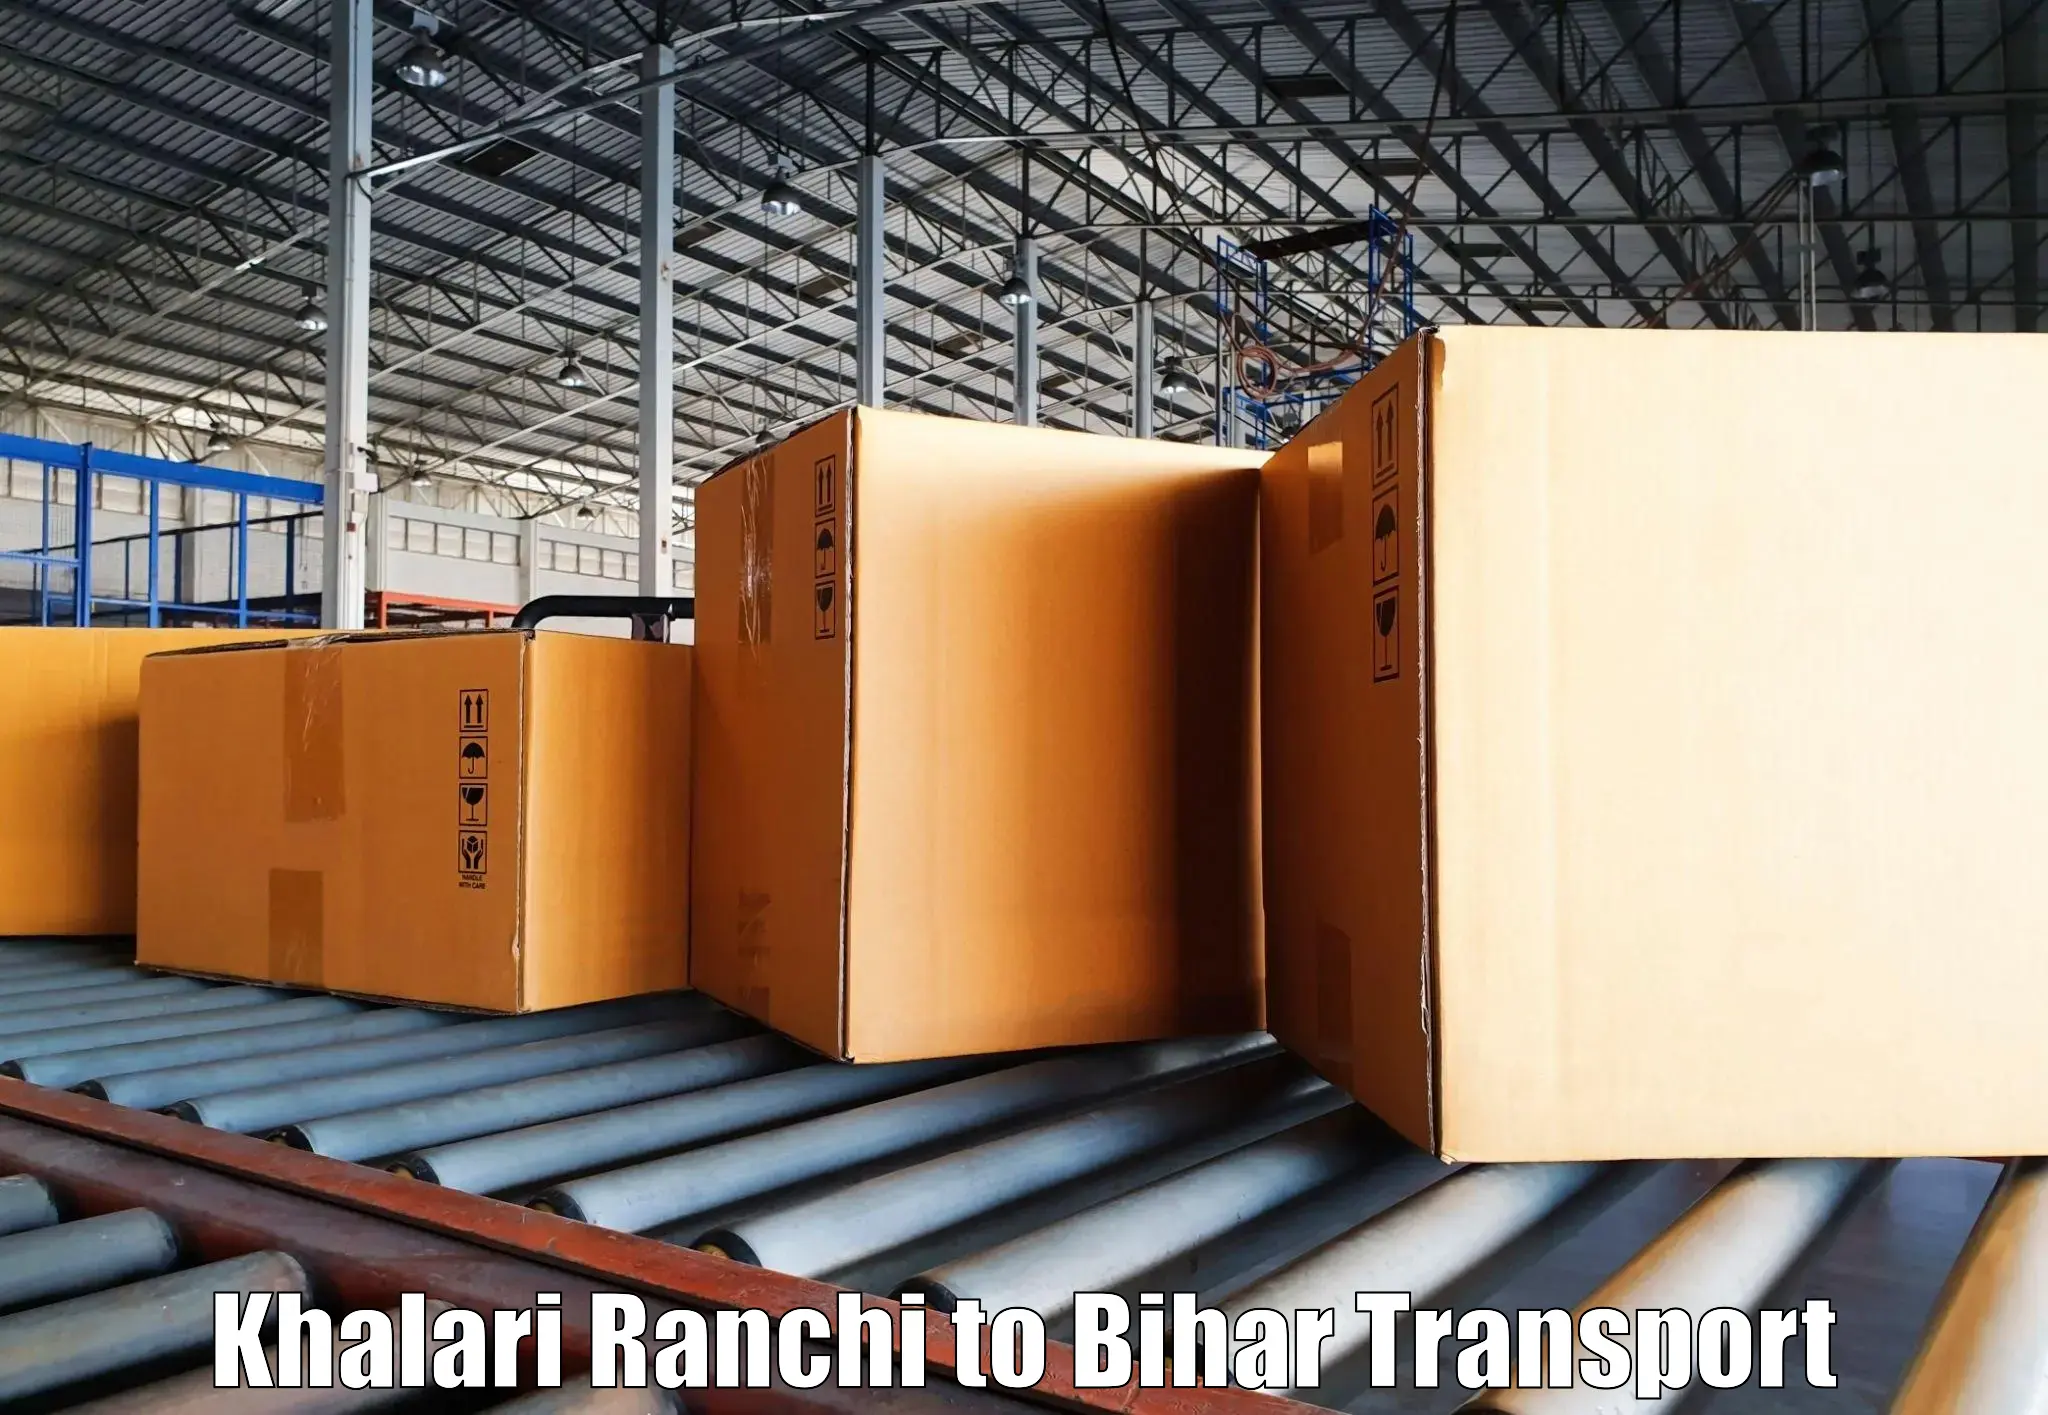 Nearby transport service Khalari Ranchi to Sangrampur